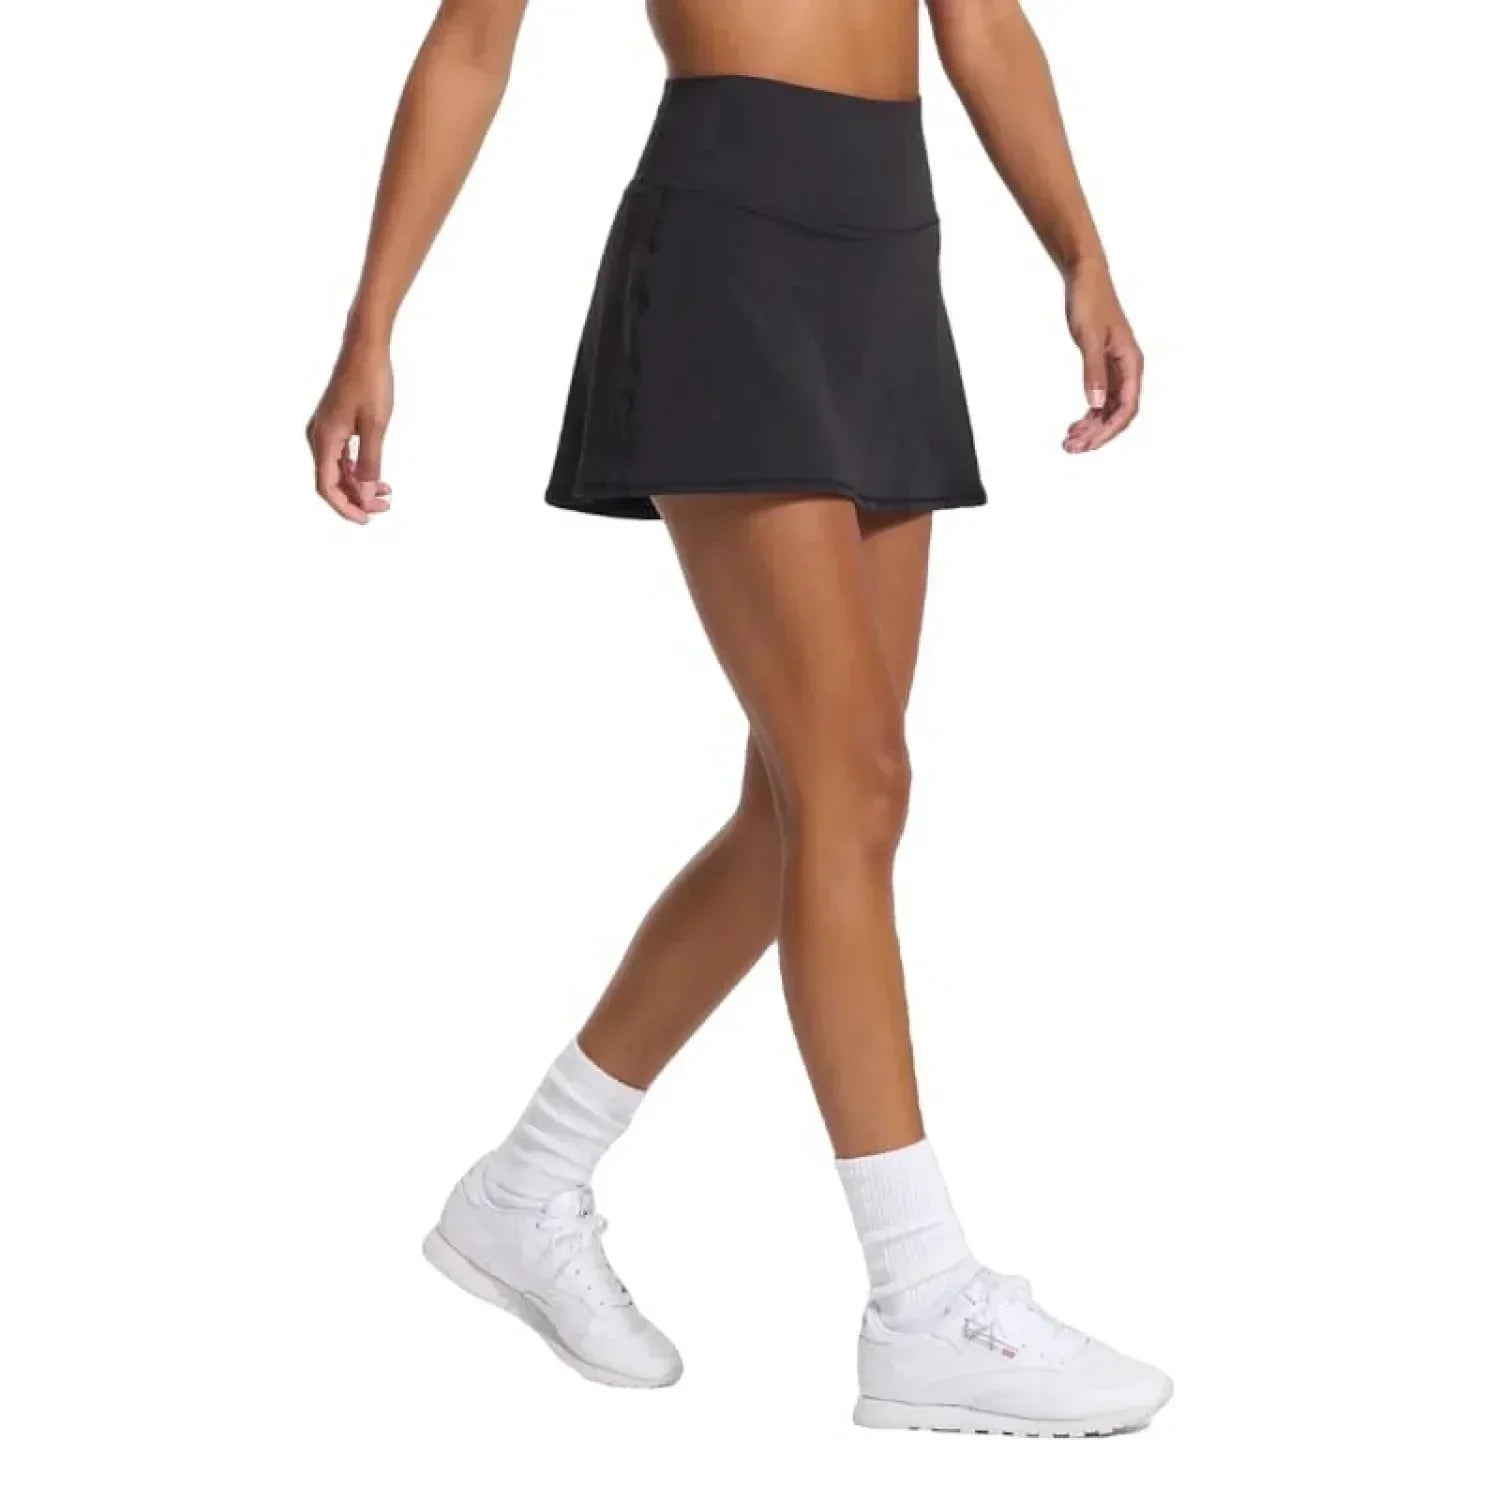 Vuori 02. WOMENS APPAREL - WOMENS DRESS|SKIRT - WOMENS SKIRT ACTIVE Women's Volley Skirt BLK BLACK